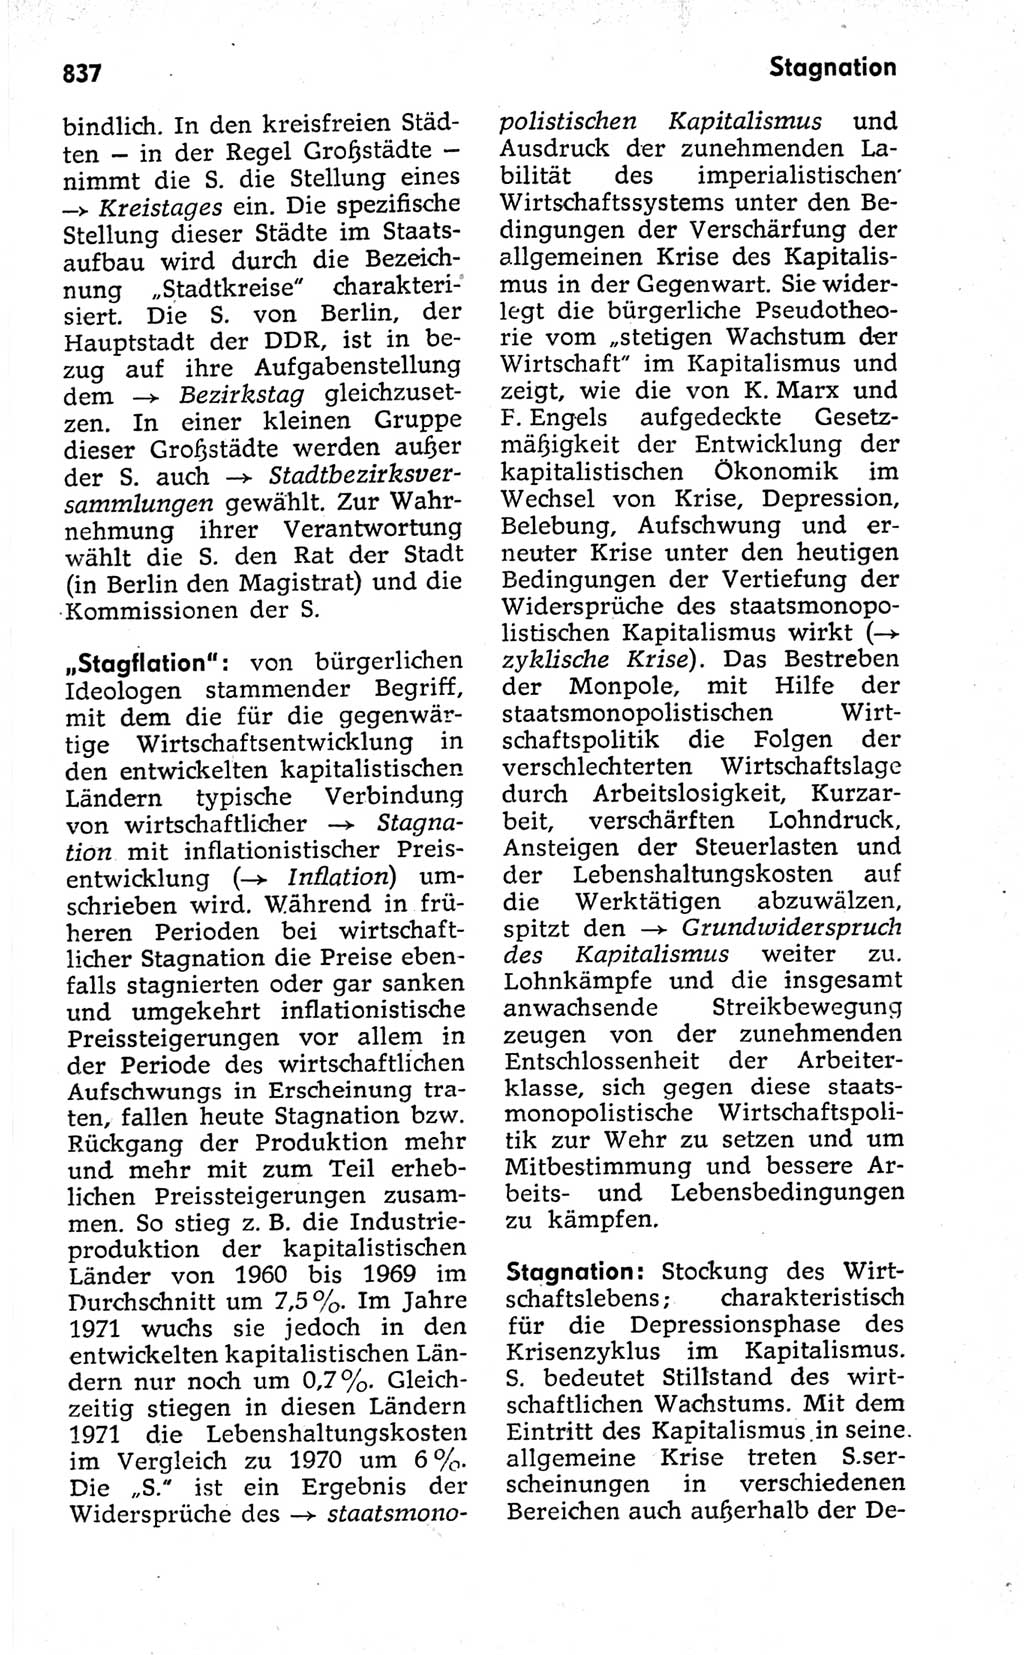 Kleines politisches Wörterbuch [Deutsche Demokratische Republik (DDR)] 1973, Seite 837 (Kl. pol. Wb. DDR 1973, S. 837)